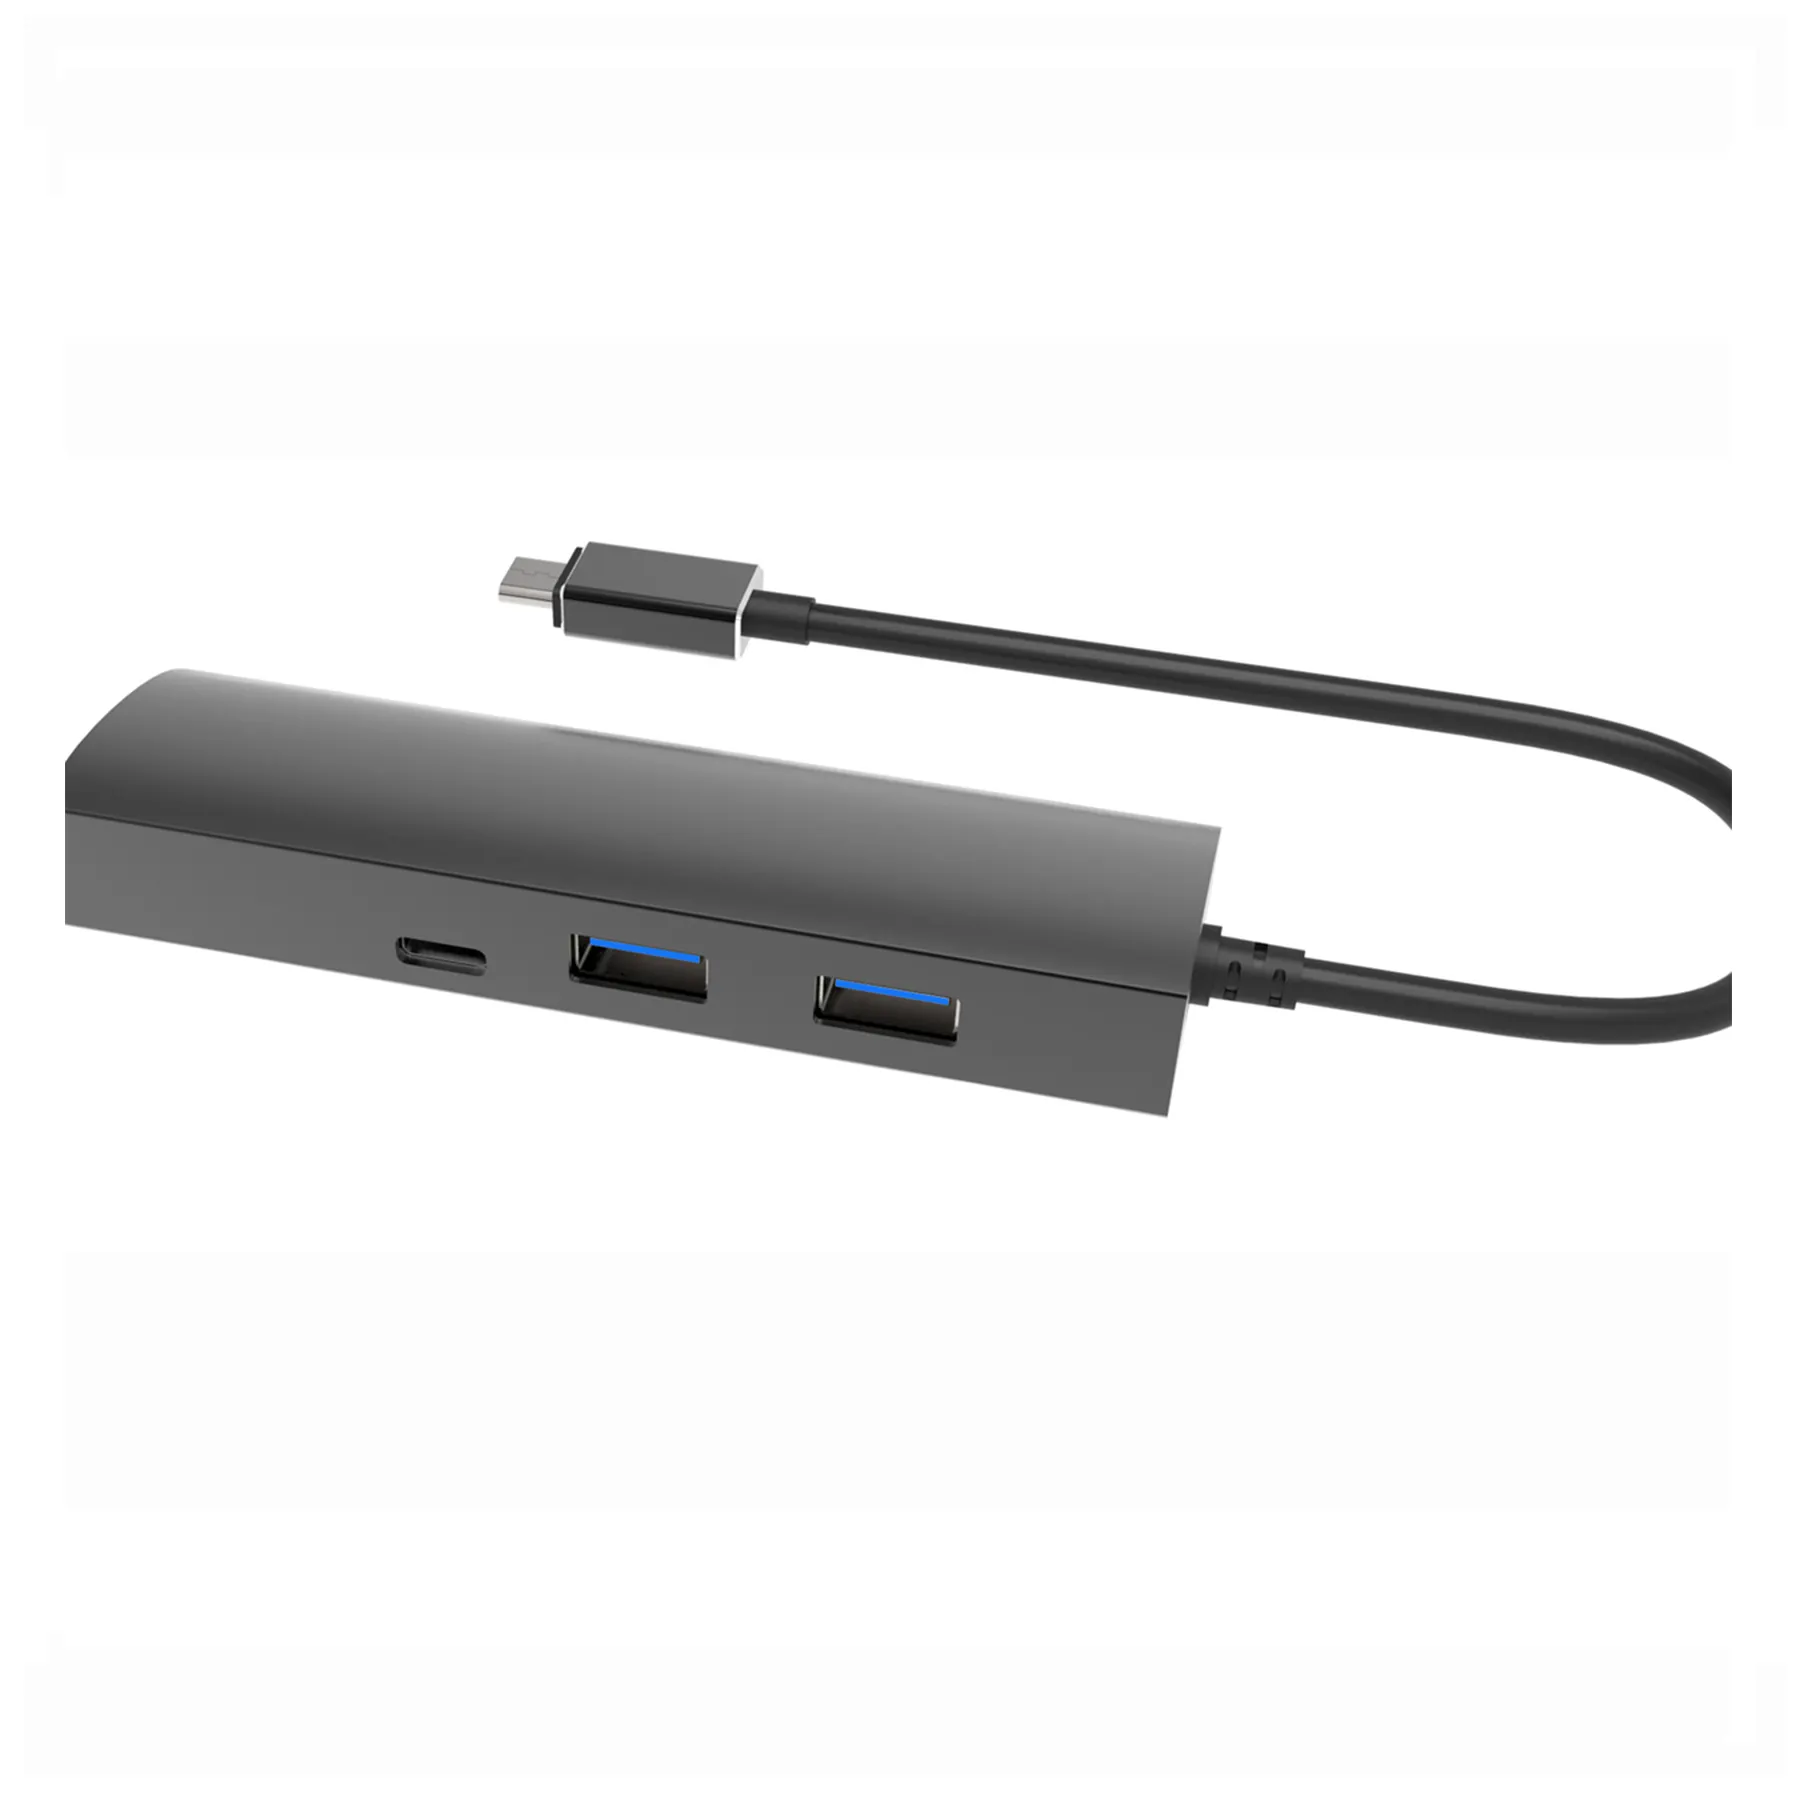 3.0 USB mozzo 3 porte con 1000M Lan Gigabit Ethernet mozzo in alluminio